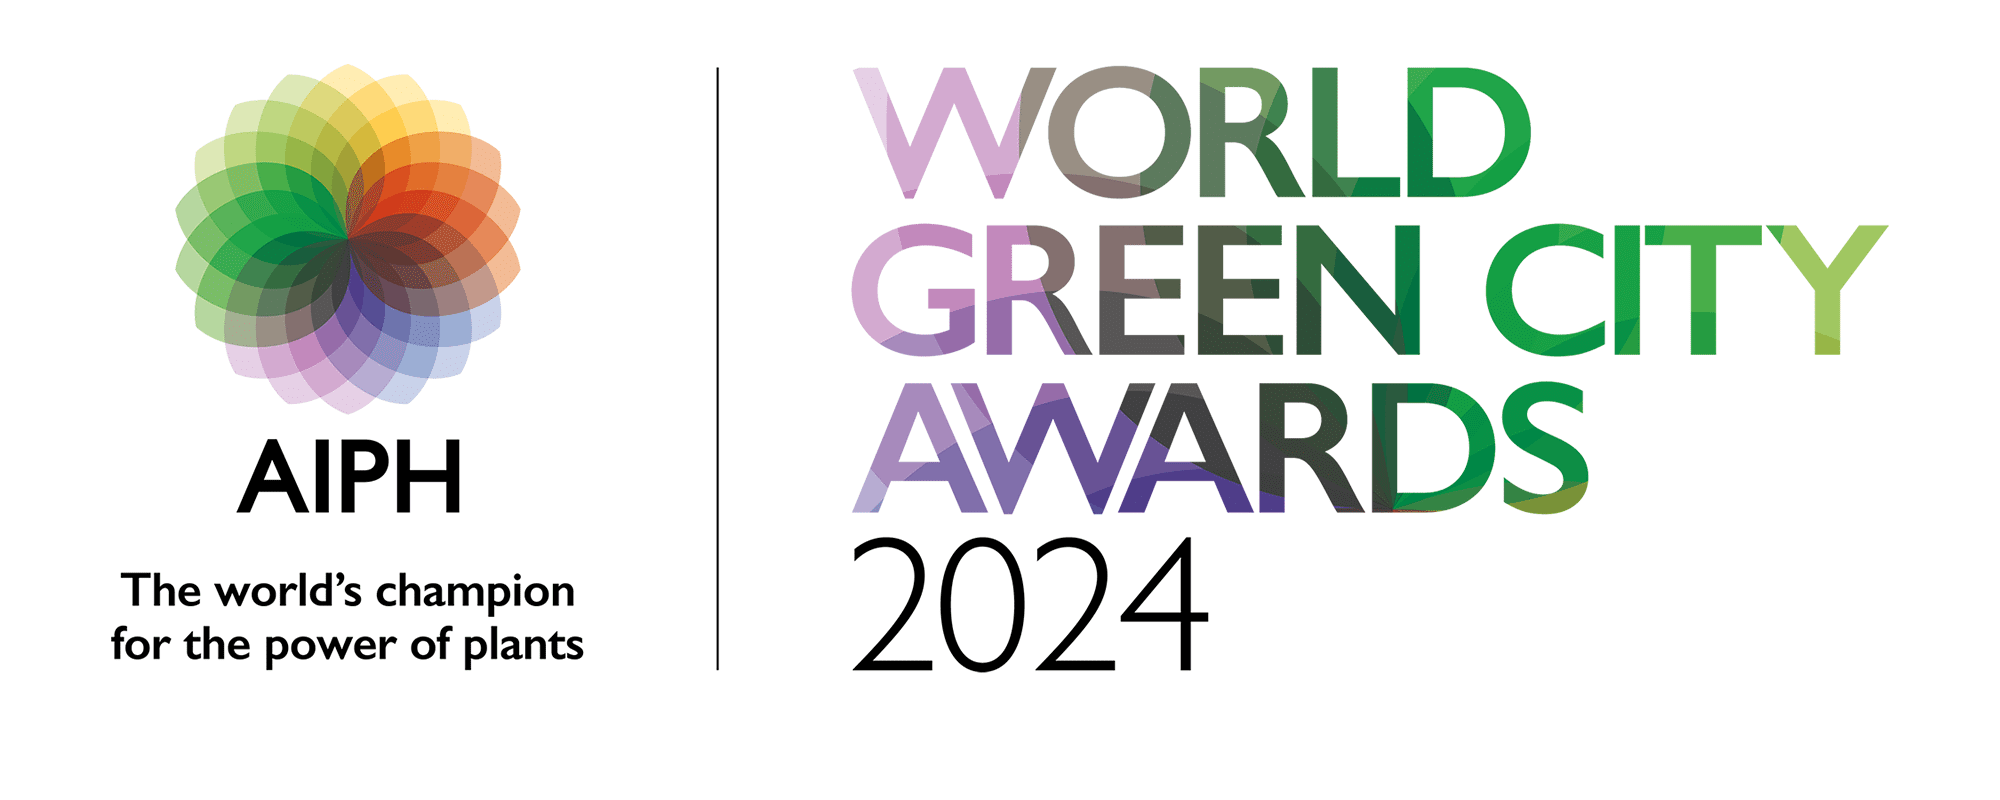 World Green City Awards 2024